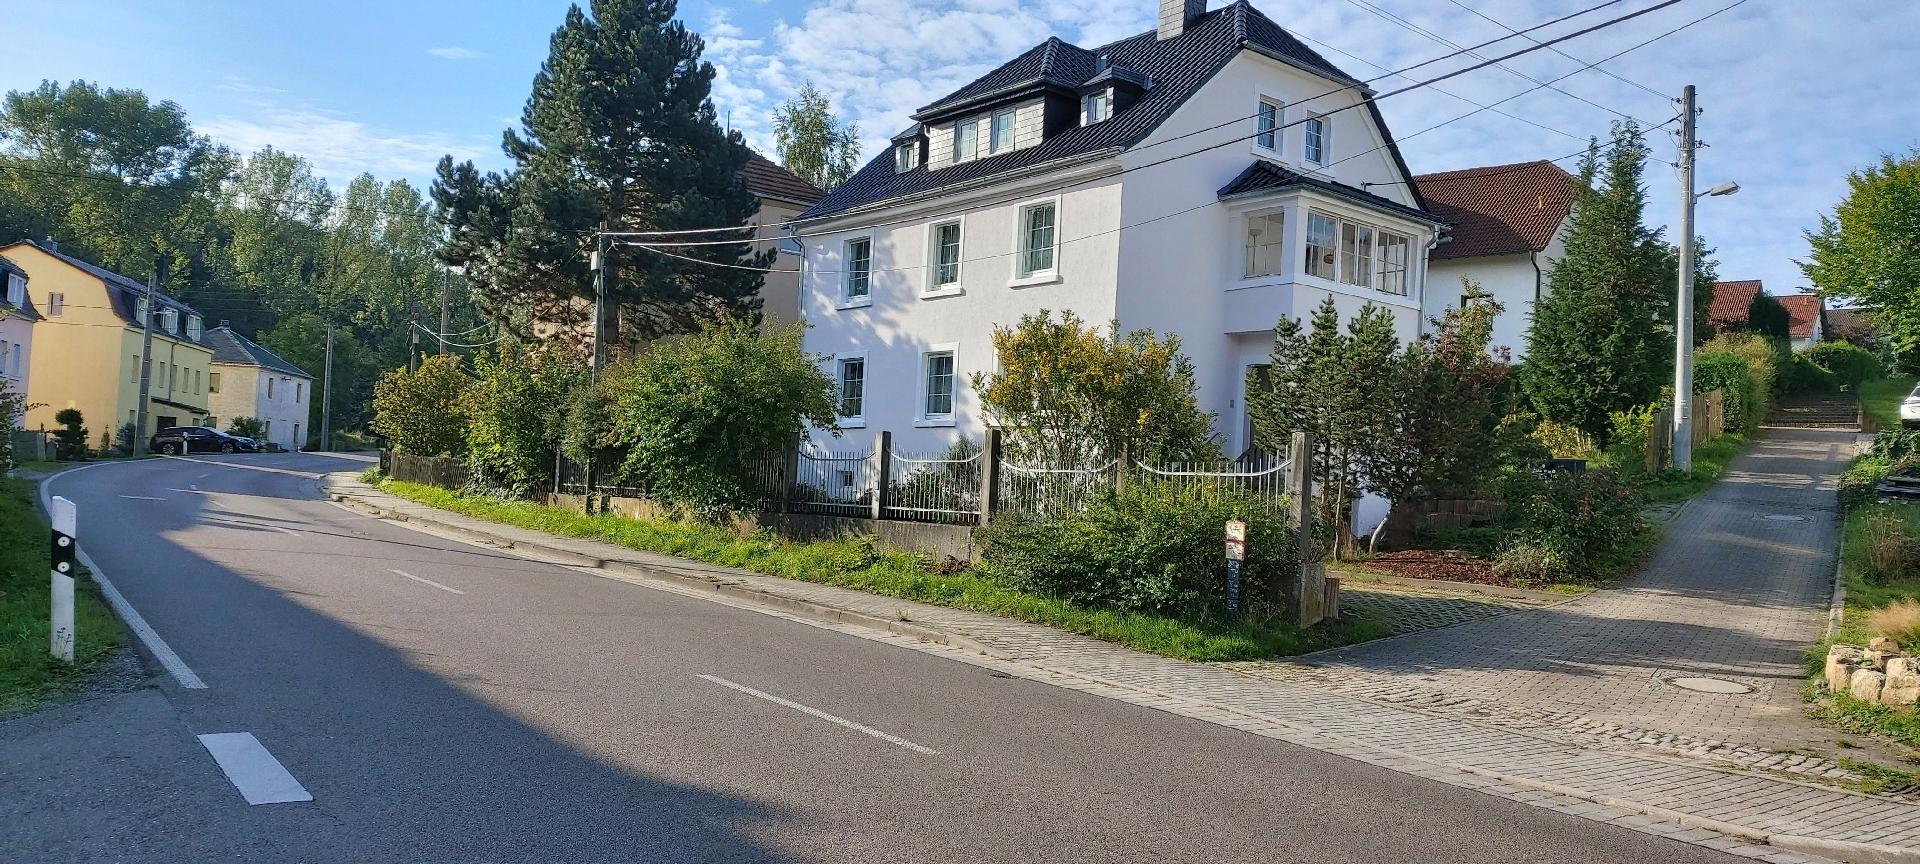 Wohnung in Hänichen mit Garten Ferienwohnung in Deutschland